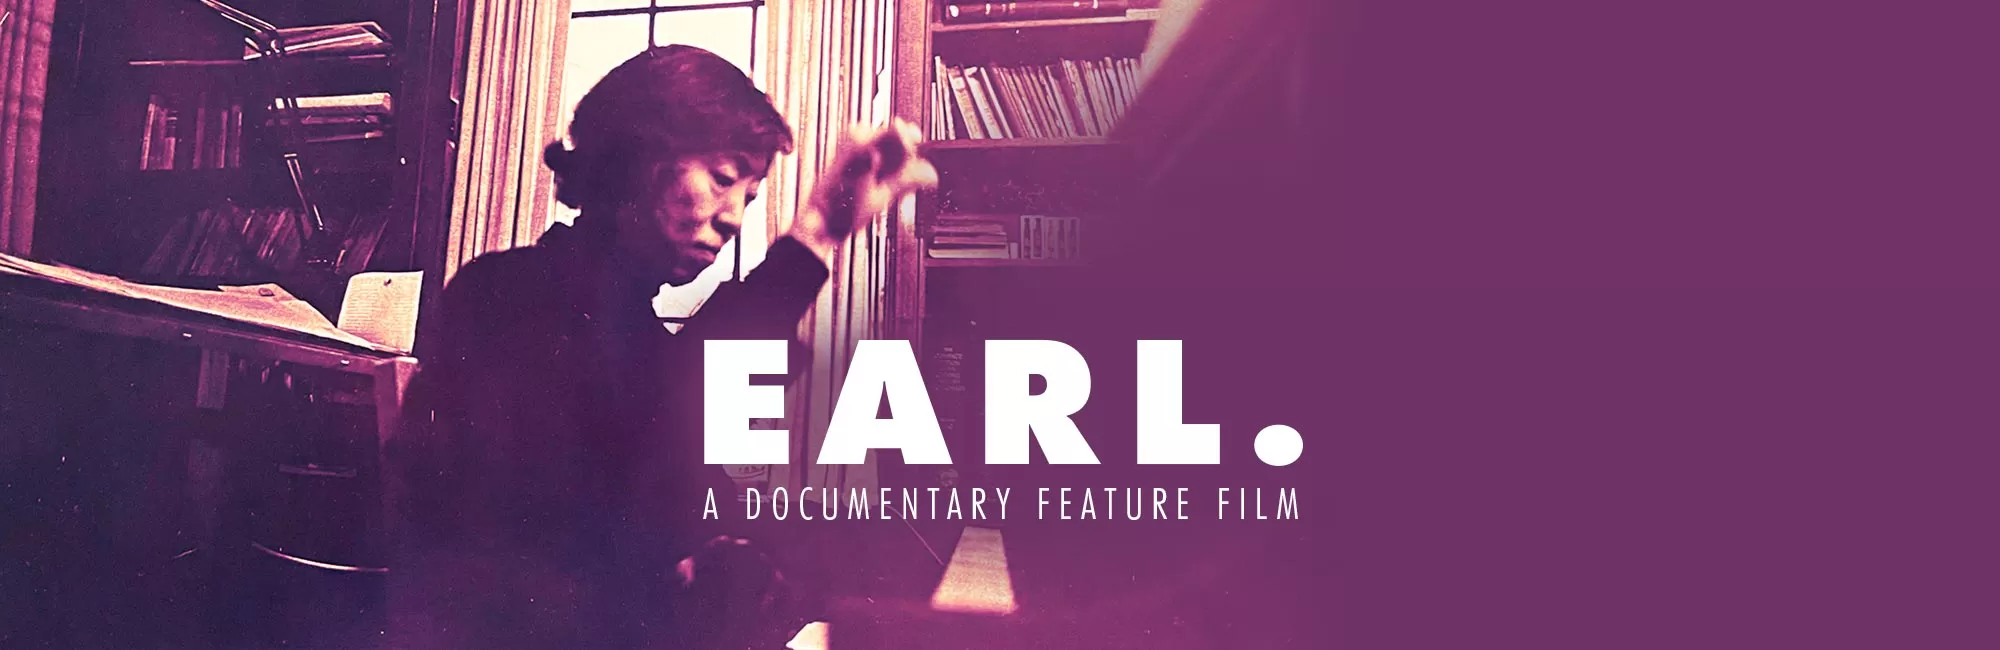 Film: Earl.